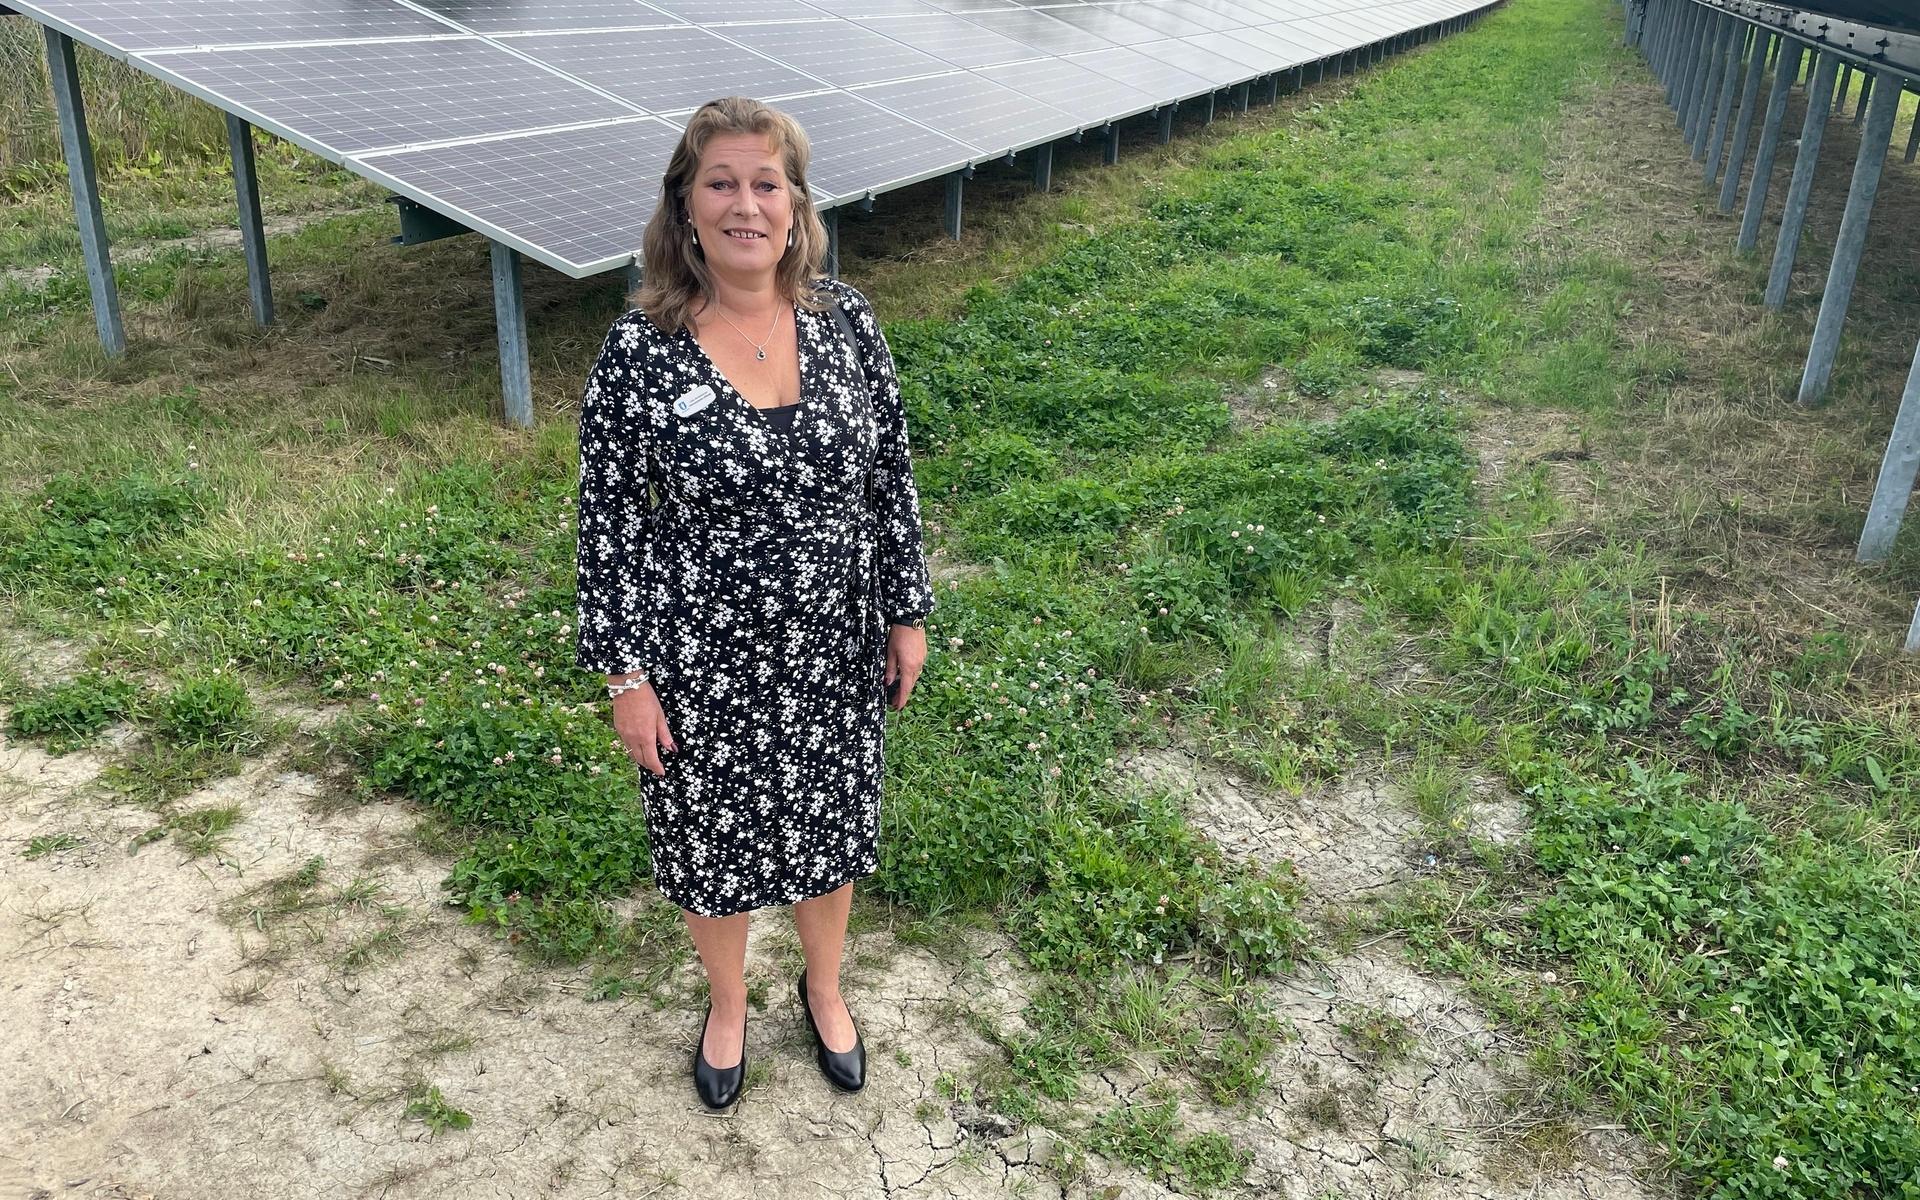 Kommunalrådet Lisa Andersson (M) strålade ikapp med, ja solen, när hon invigde solcellsparken.